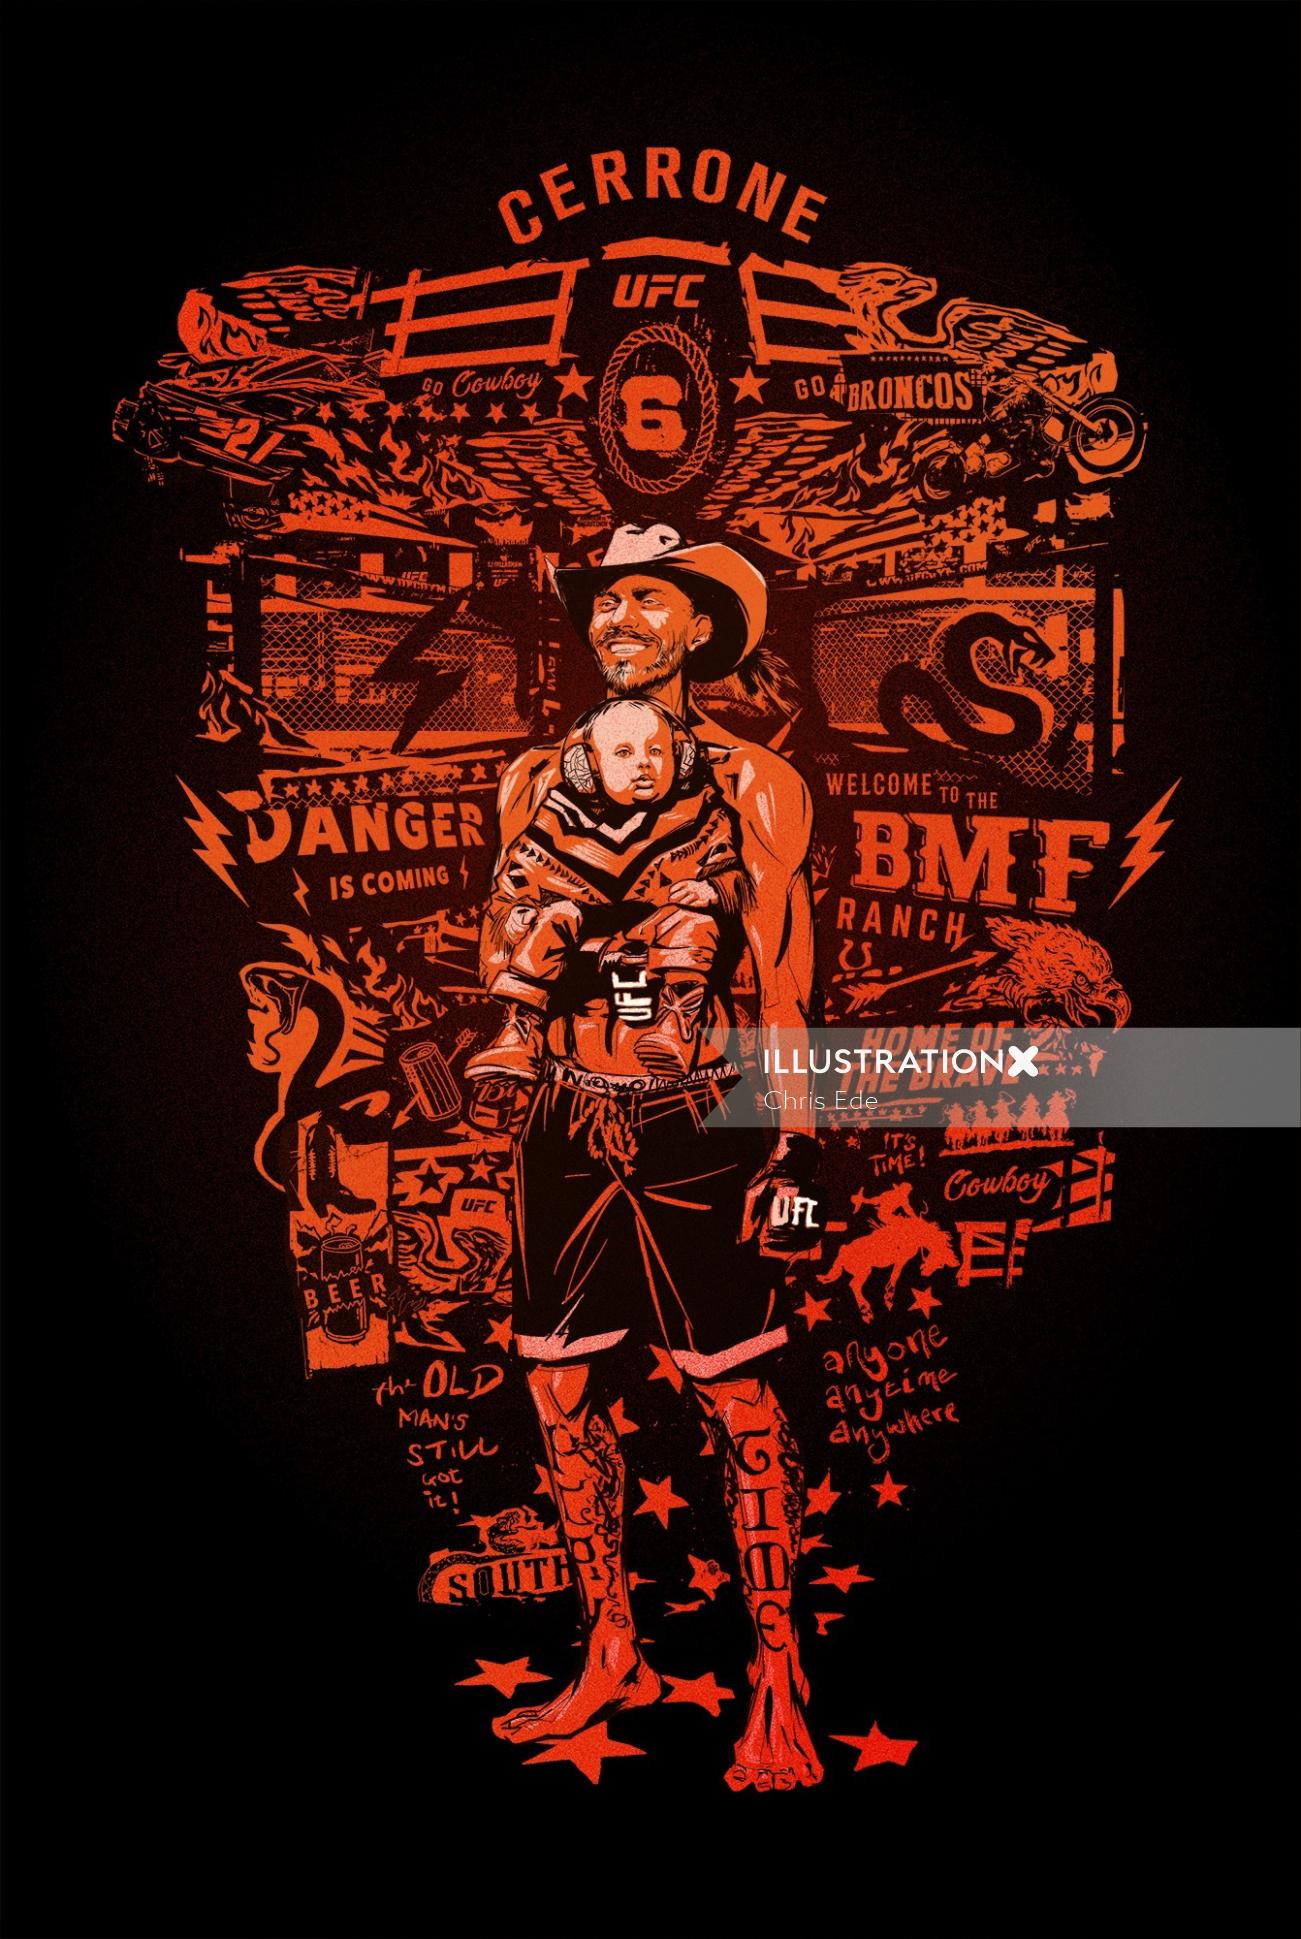 Montagem mash up Cowboy Cerrone Portrait UFC